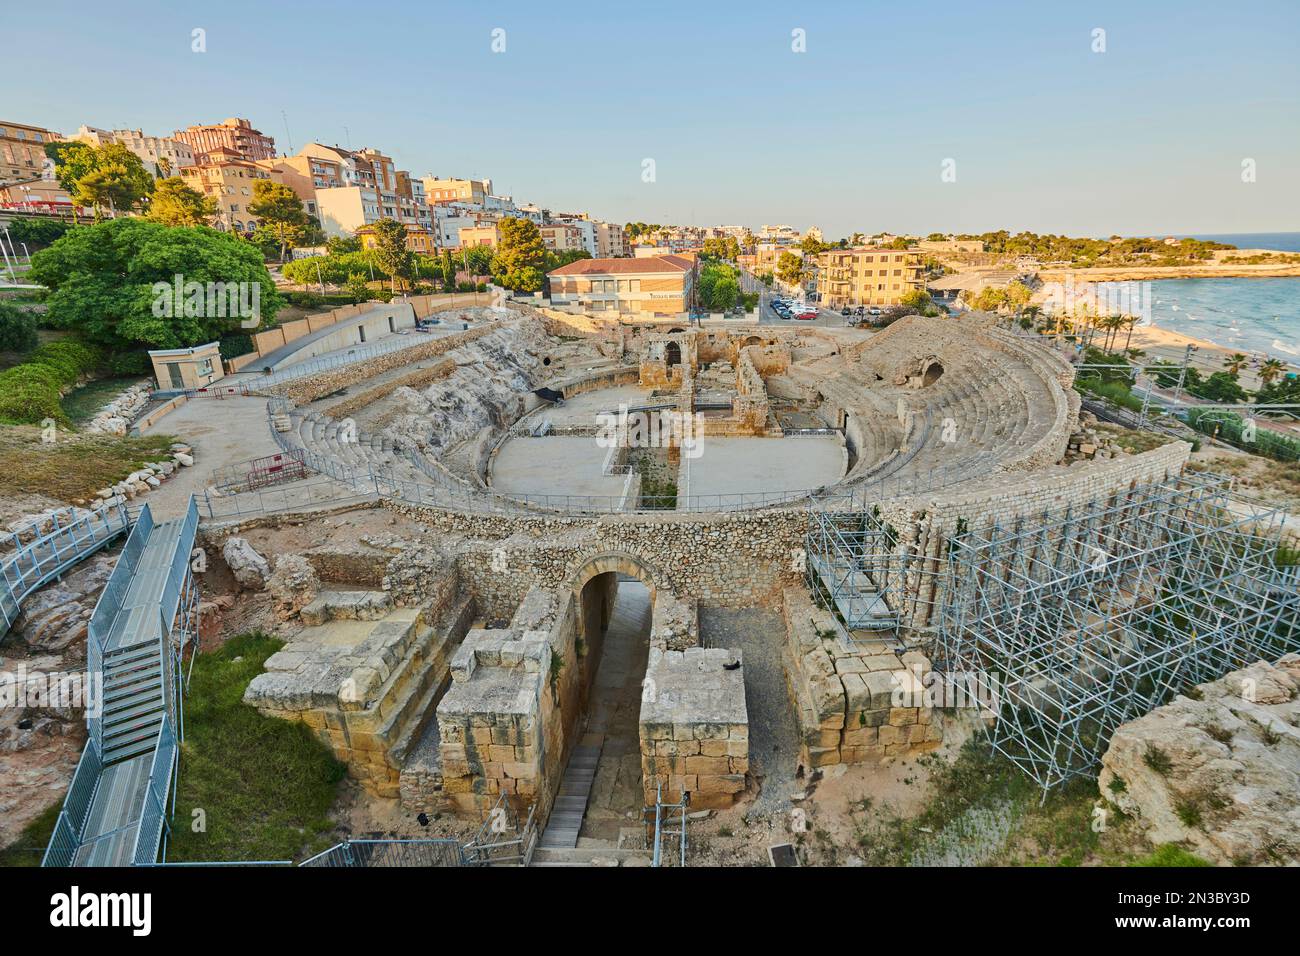 Ancien amphithéâtre de Tarragone (Amfiteatre Romà - Circ Roma) dans la ville portuaire de Tarragone; Tarragone, Catalogne, Espagne Banque D'Images